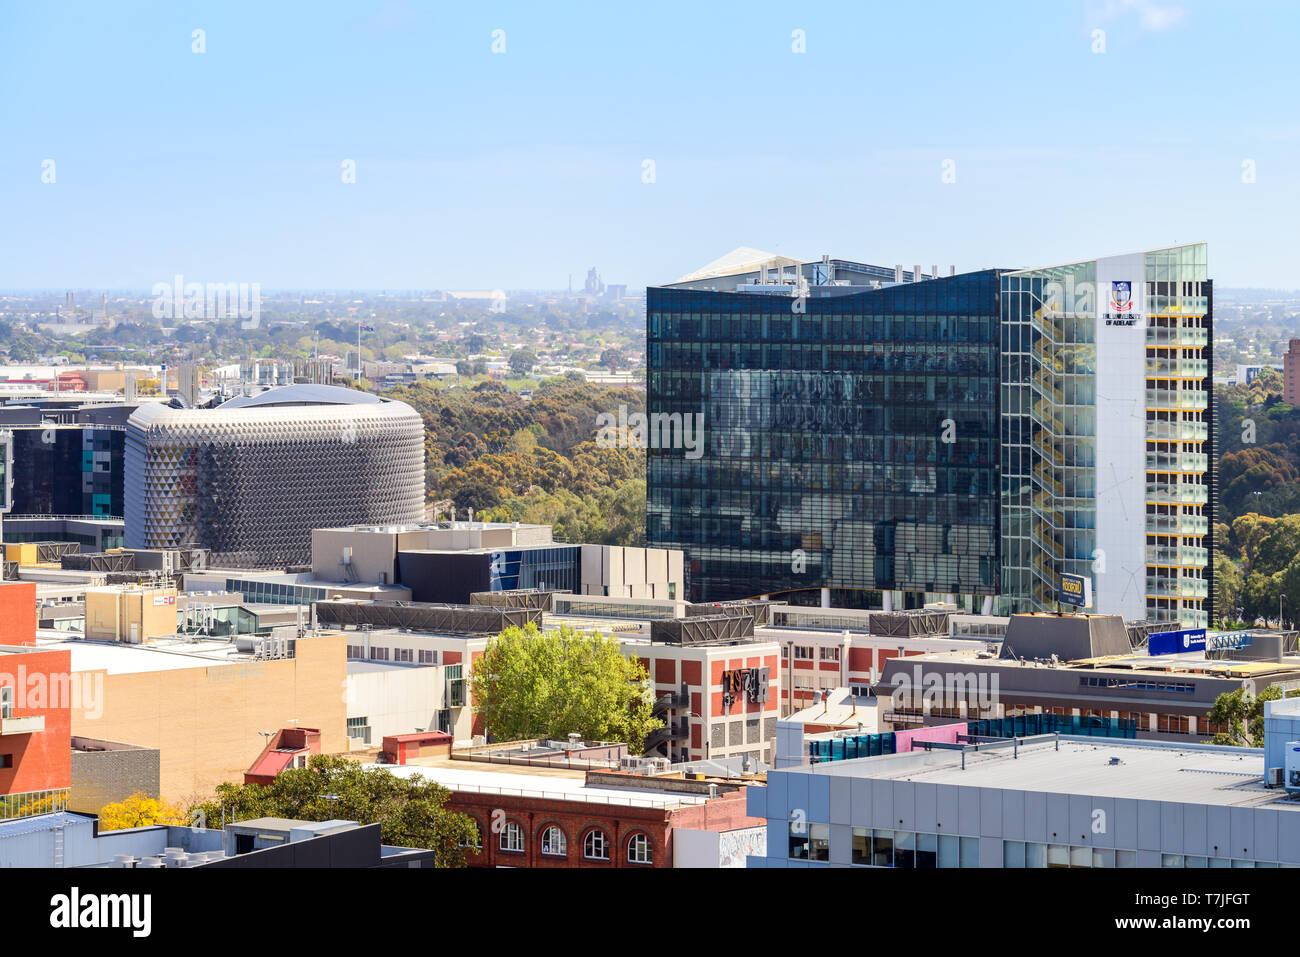 Adelaide, South Australia - 30. September 2017: Universität in Adelaide und South Australian Medical Research Institute Gebäude, die über Stadt ce gesehen Stockfoto